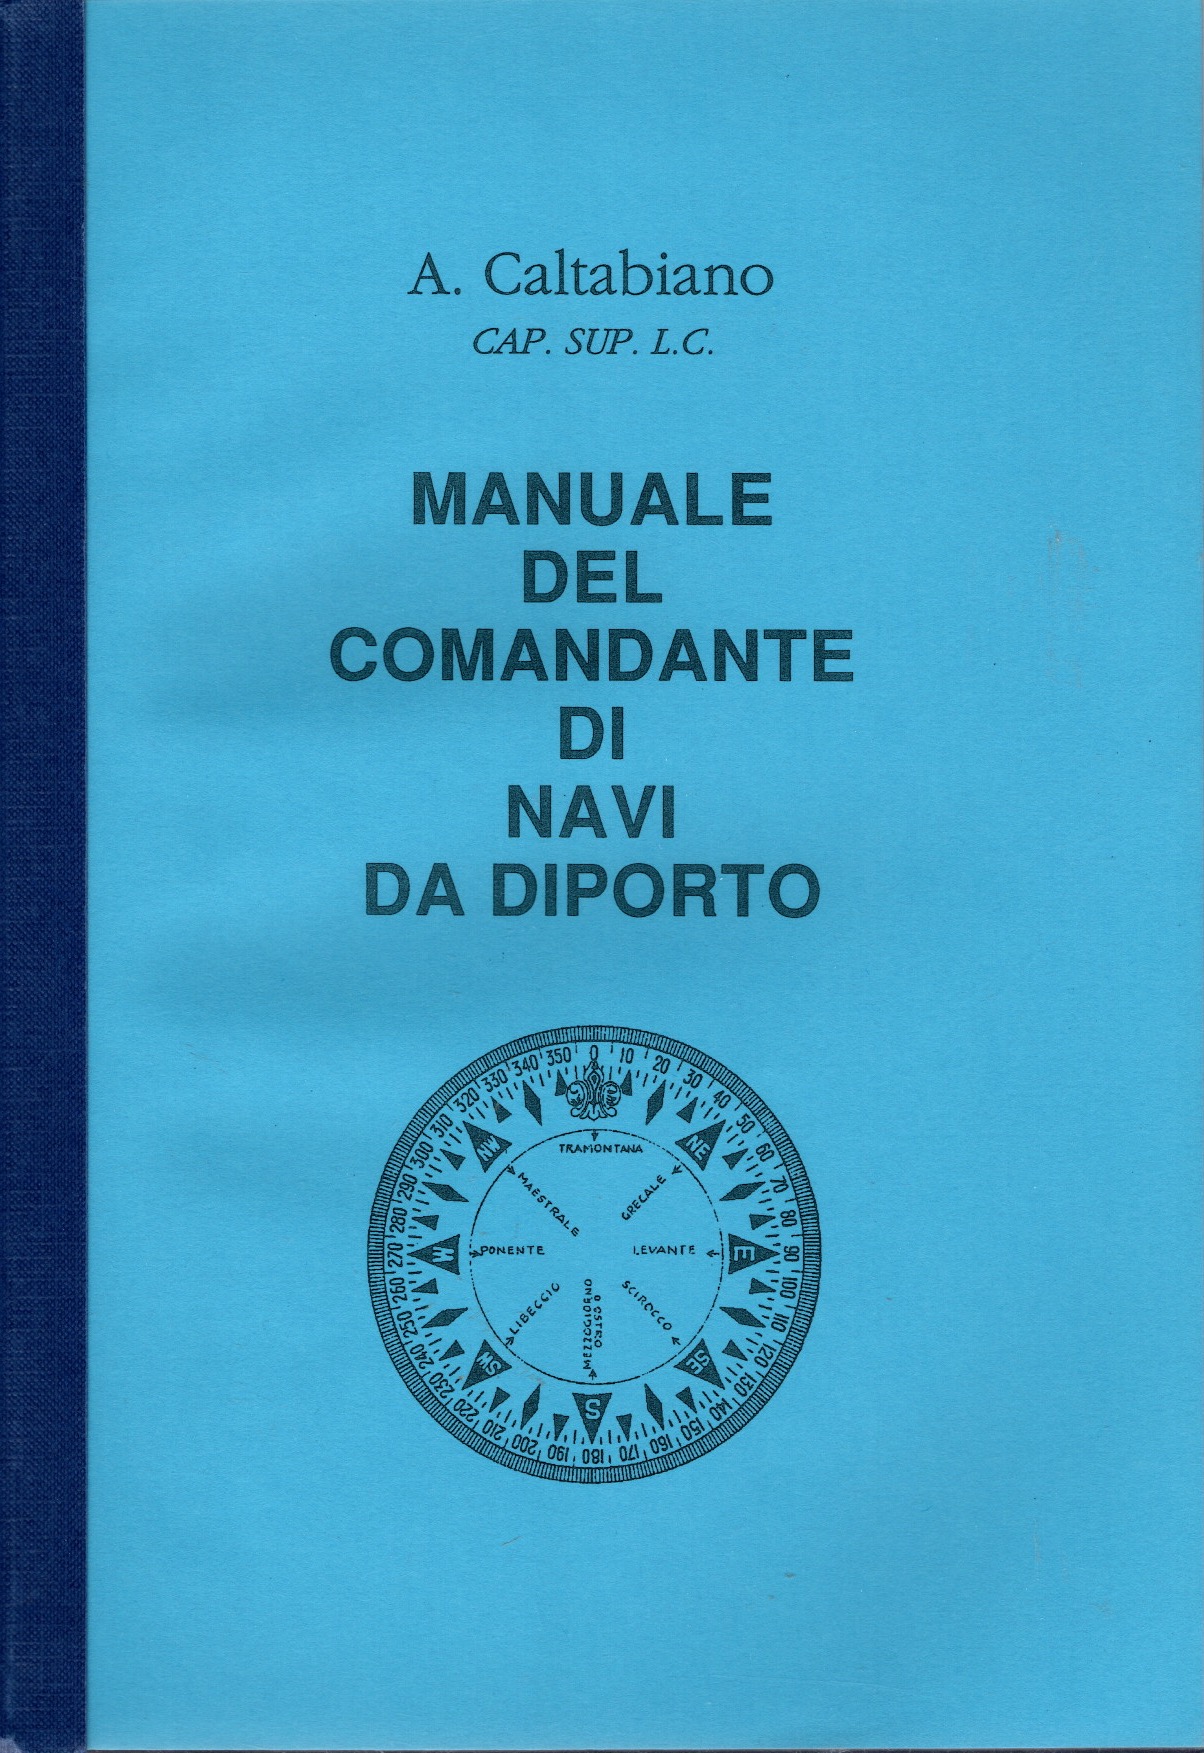 Manuale del comandante delle navi da diporto